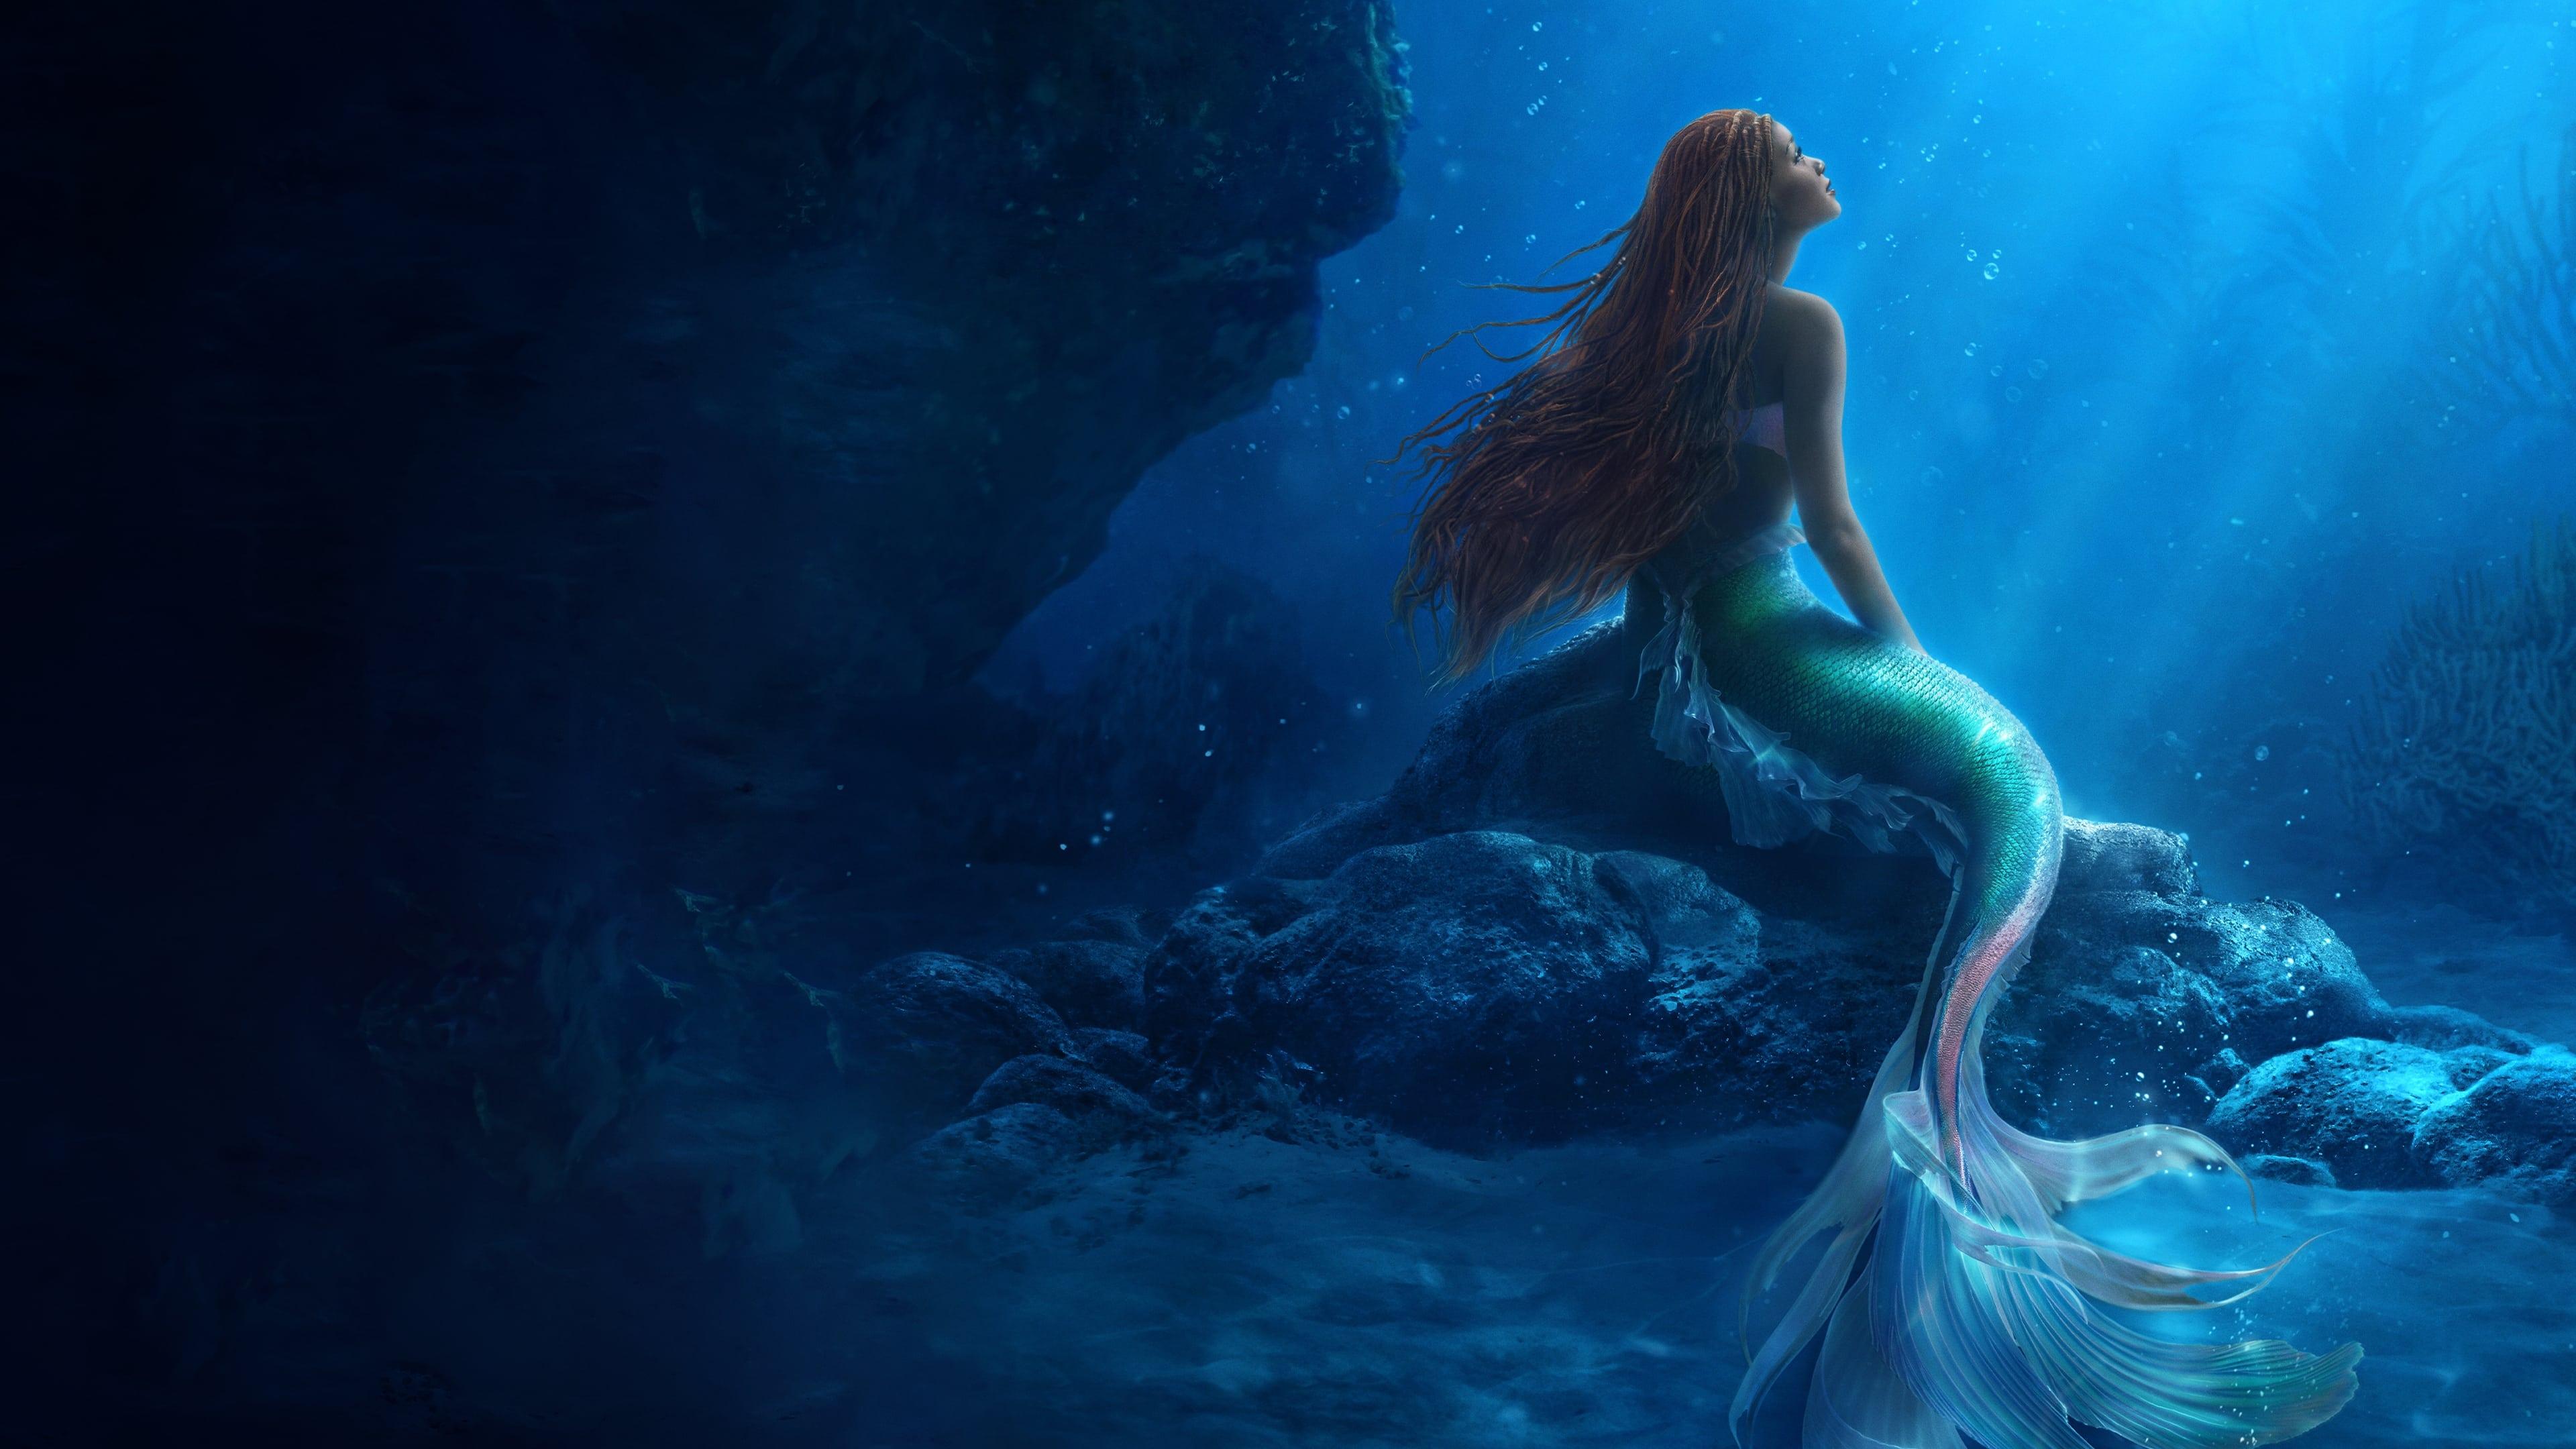 The Little Mermaid backdrop